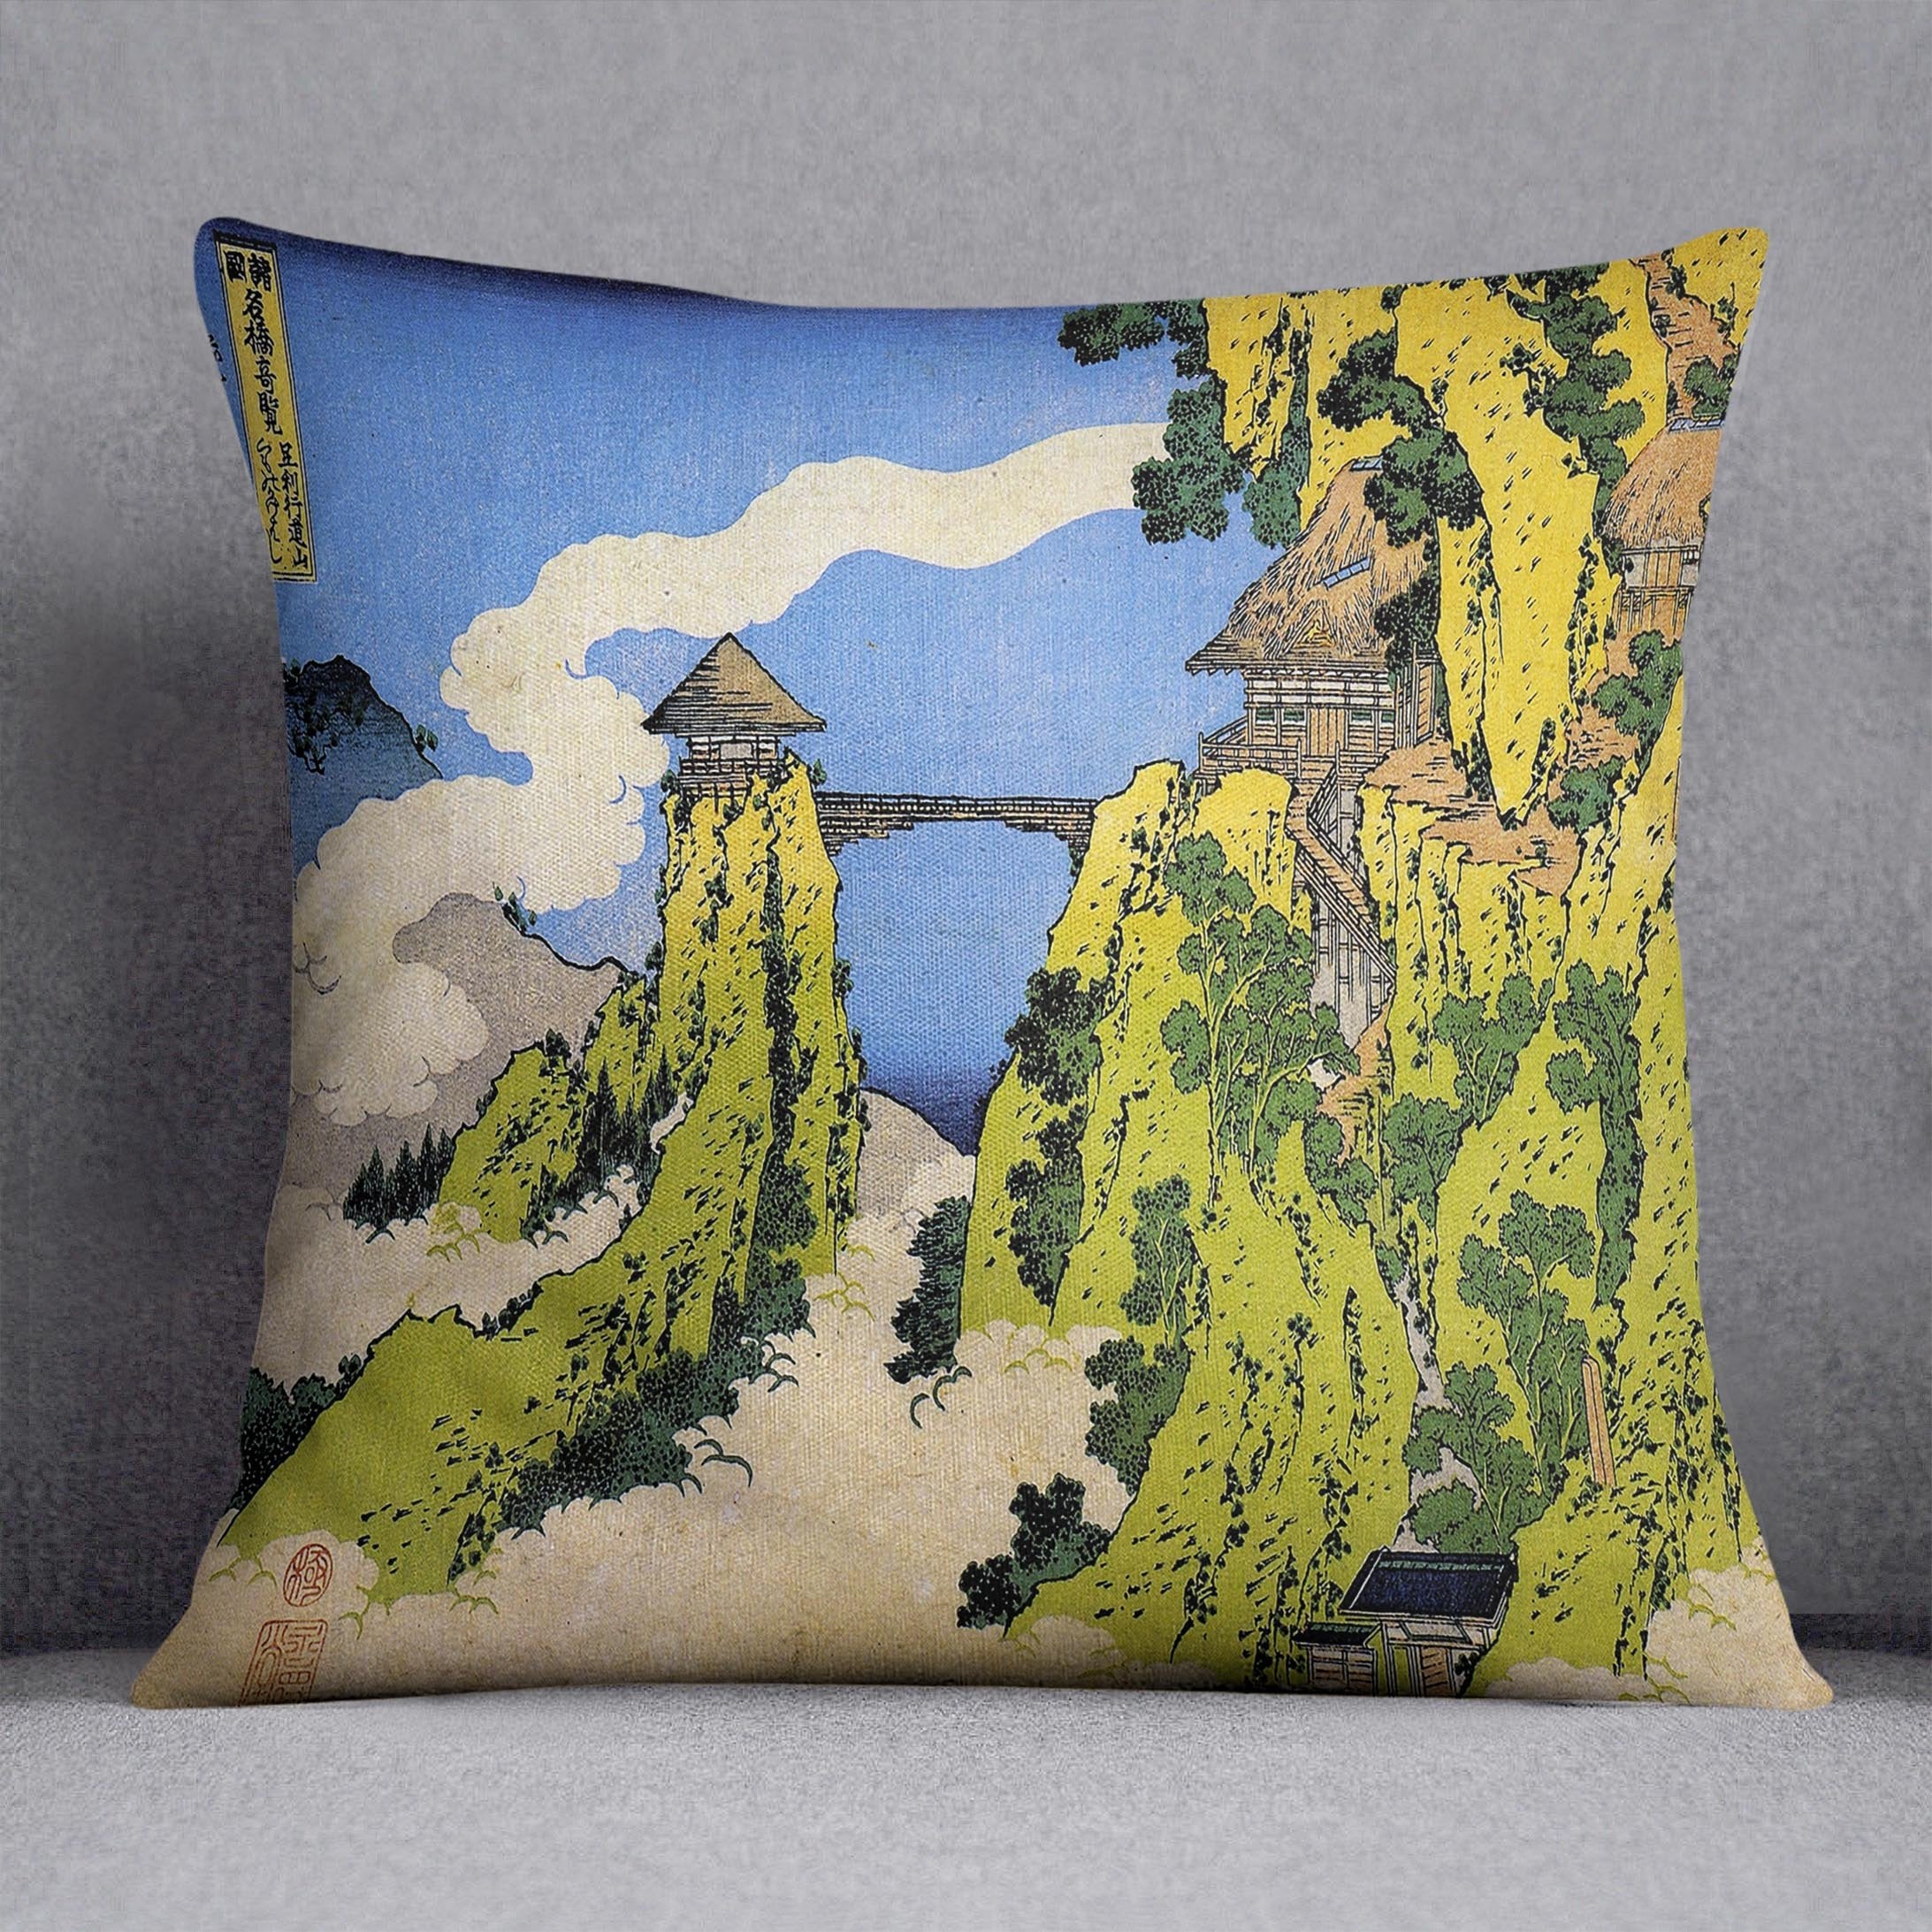 Temple bridge by Hokusai Throw Pillow